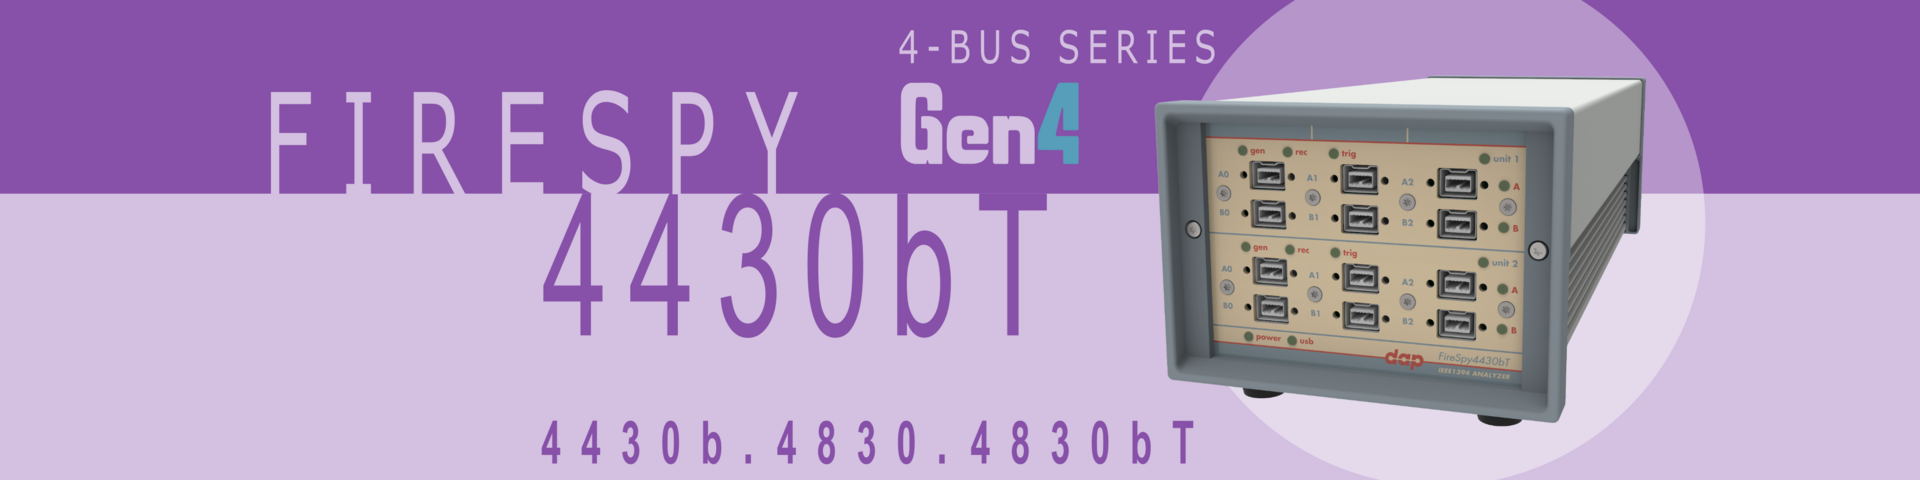 1394 and AS5643 Bus Analyzer - FireSpy4430b(T)/4830b(T)